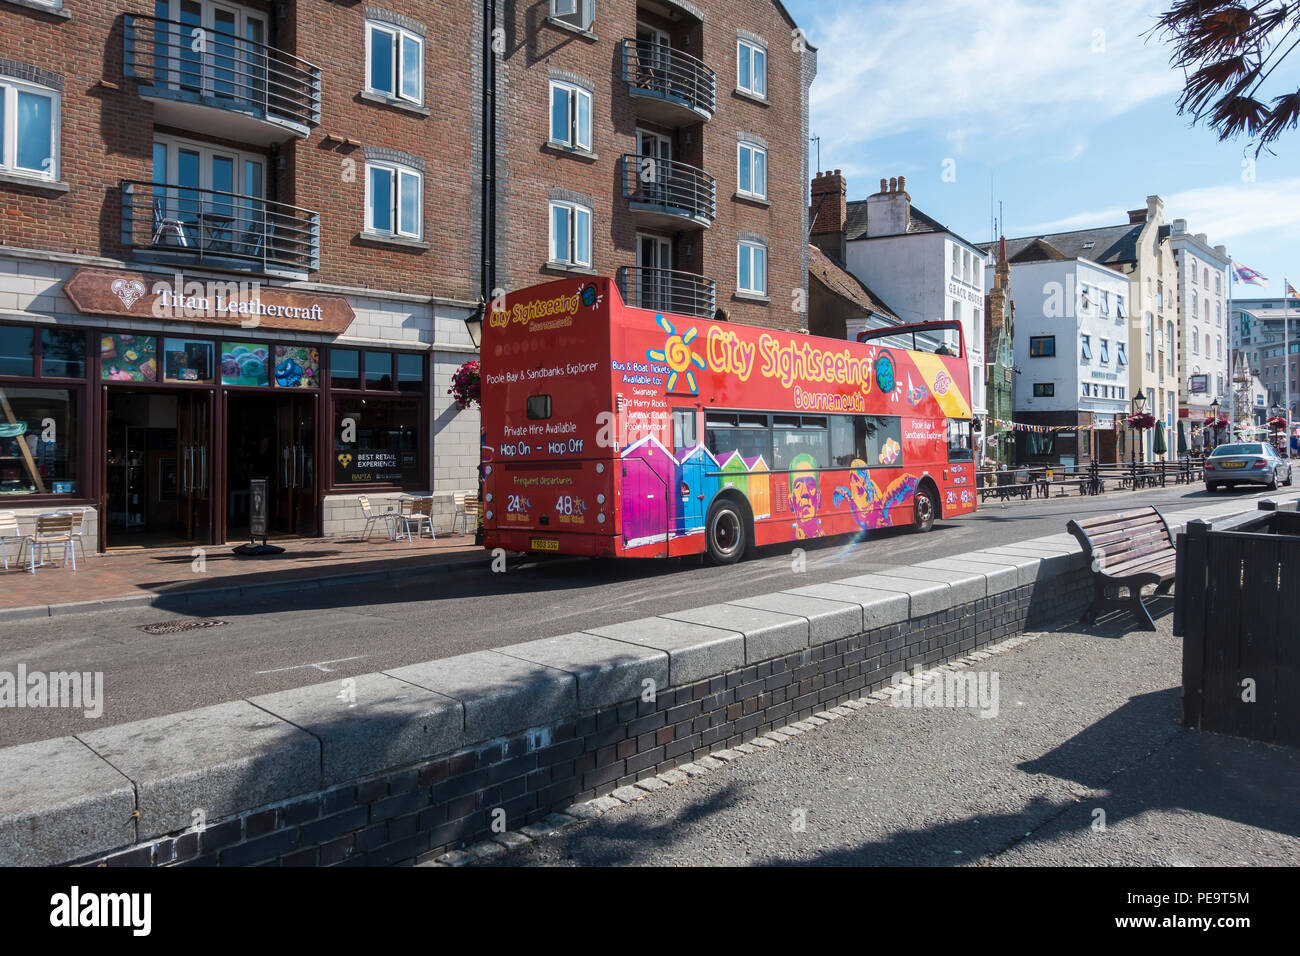 Eine offene Top City Sightseeing Tour Bus auf Poole Quay in der Sommersaison, Poole, Dorset, Großbritannien Stockfoto